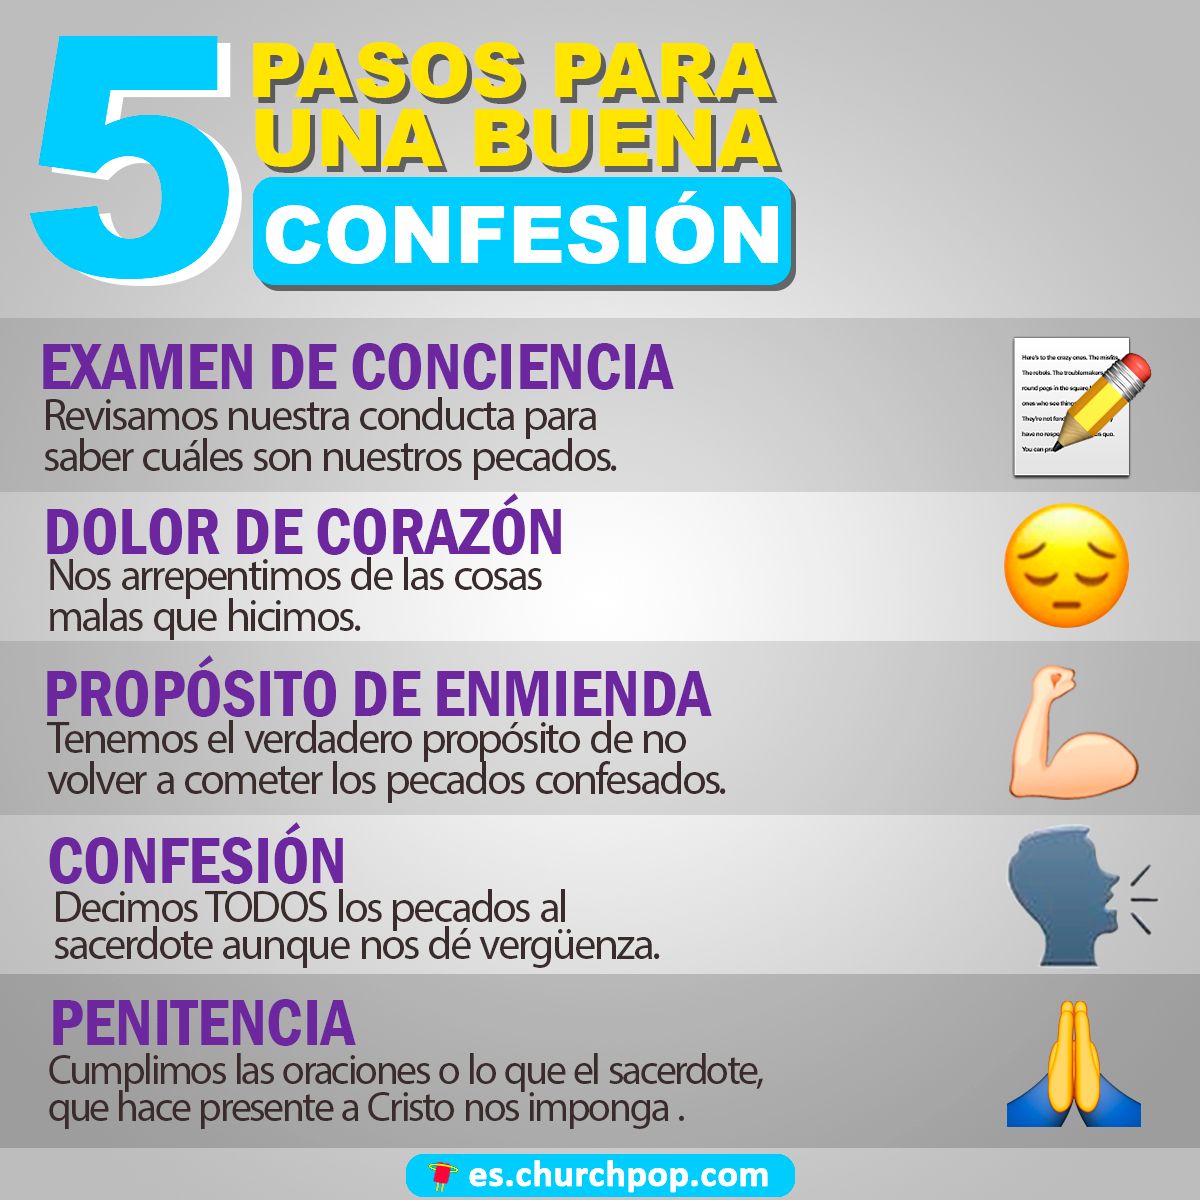 Estos son los cinco pasos que debes seguir para una buena confesión